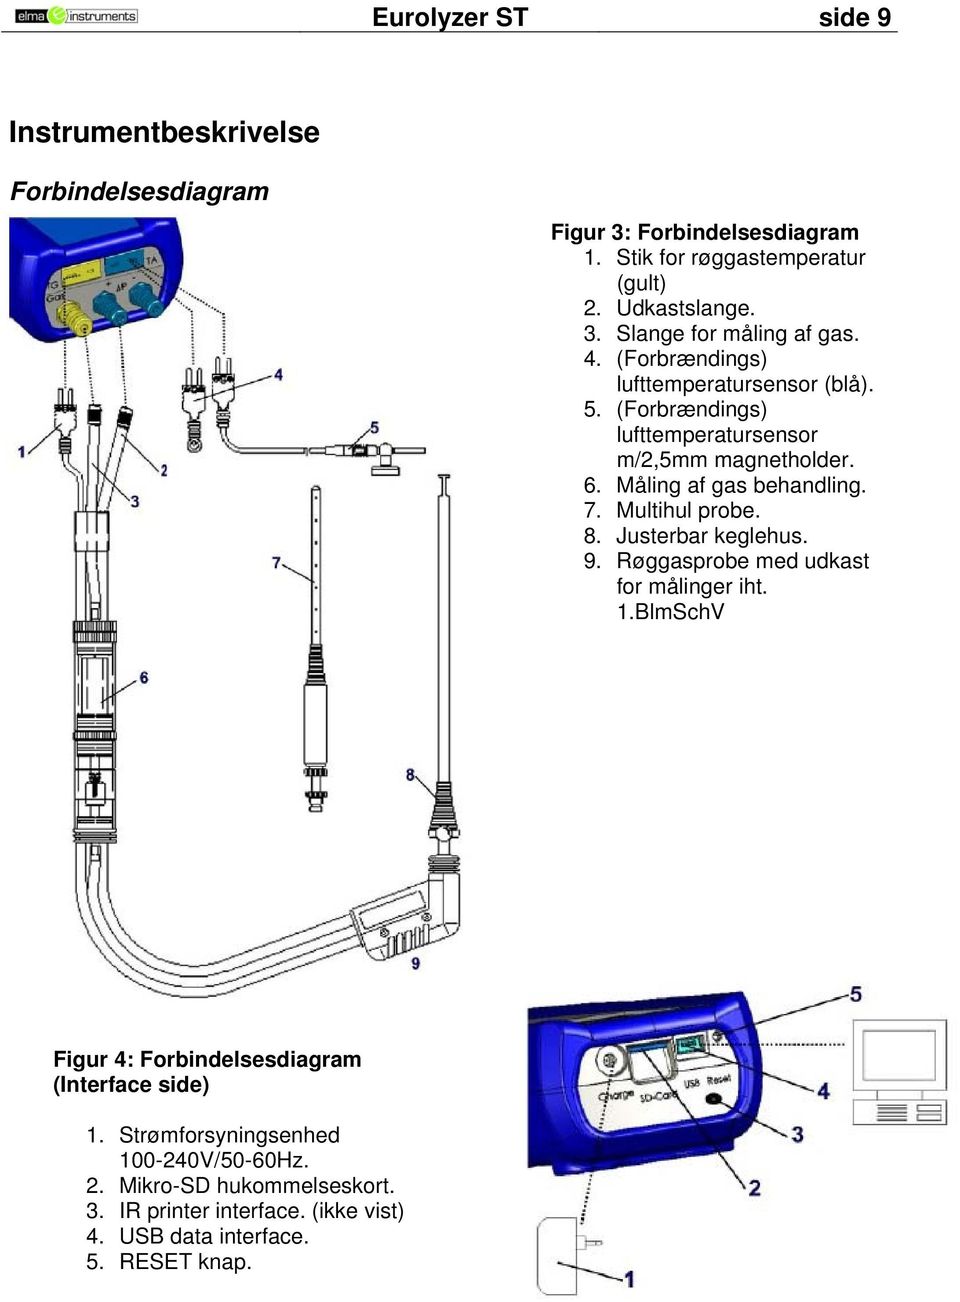 Multihul probe. 8. Justerbar keglehus. 9. Røggasprobe med udkast for målinger iht. 1.BlmSchV Figur 4: Forbindelsesdiagram (Interface side) 1.